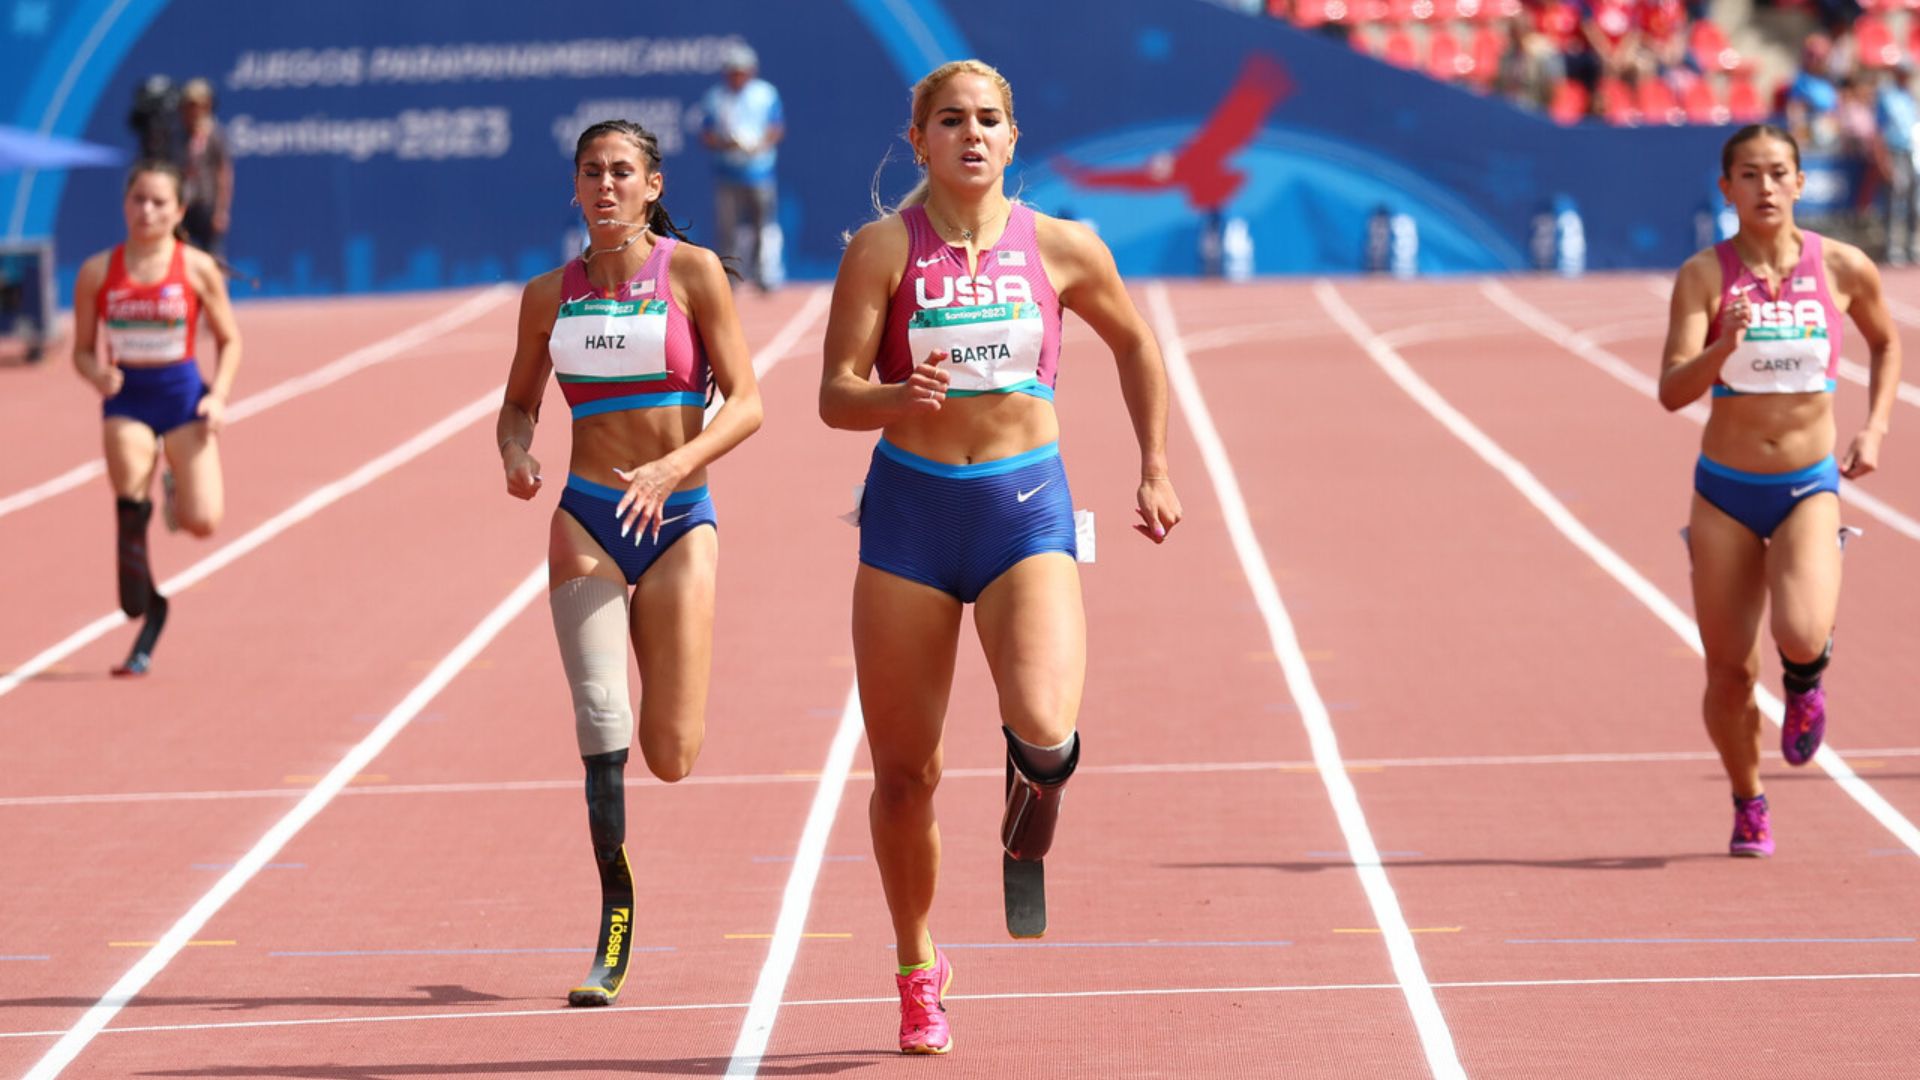 Para atletismo: Estados Unidos bate récord parapanamericano en 200 metros T35